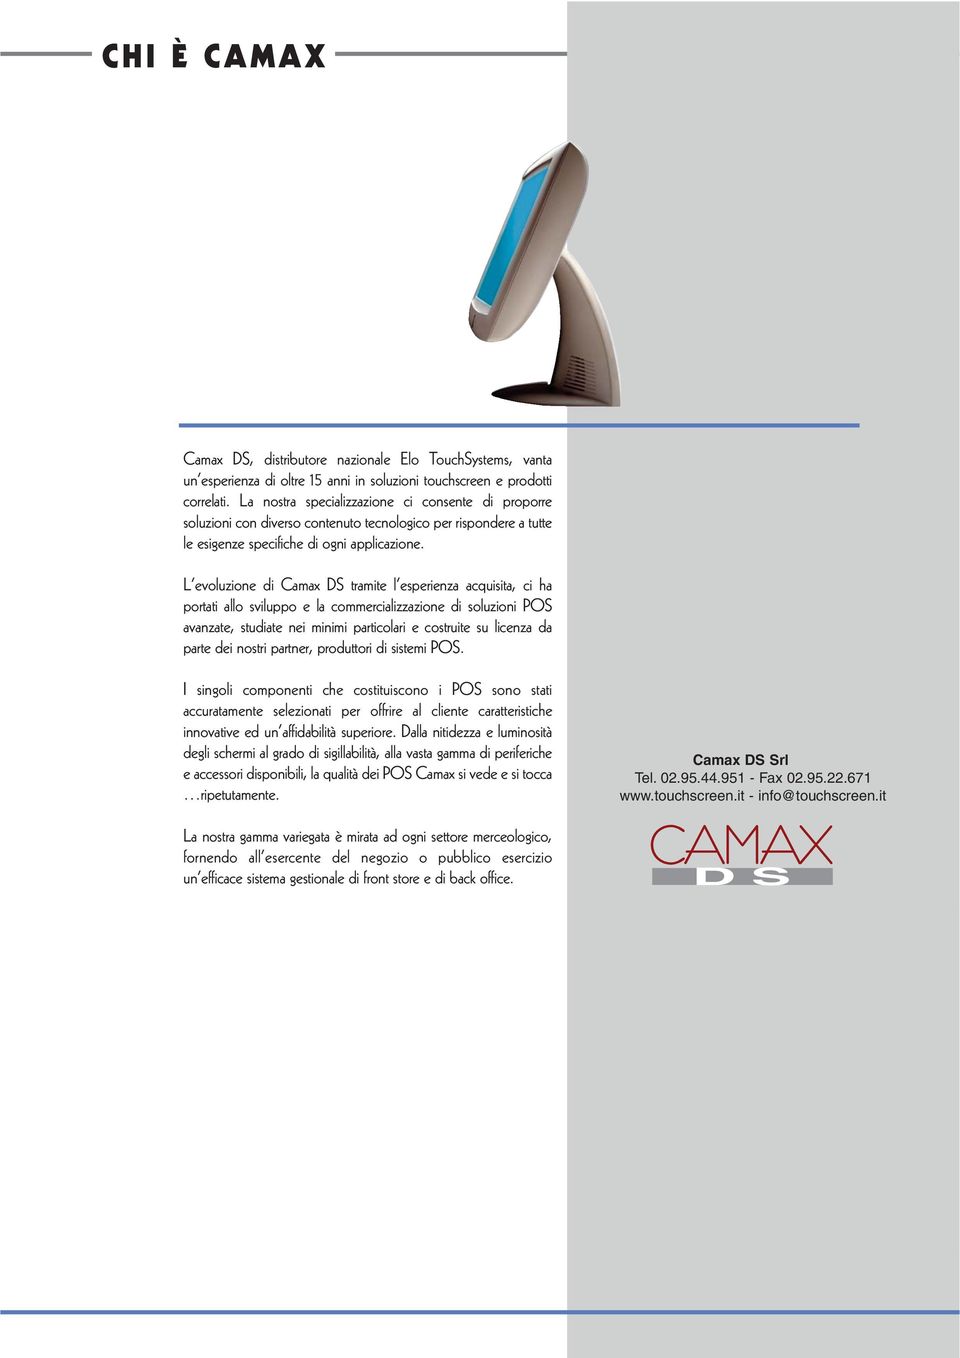 L evoluzione di Camax DS tramite l esperienza acquisita, ci ha portati allo sviluppo e la commercializzazione di soluzioni POS avanzate, studiate nei minimi particolari e costruite su licenza da